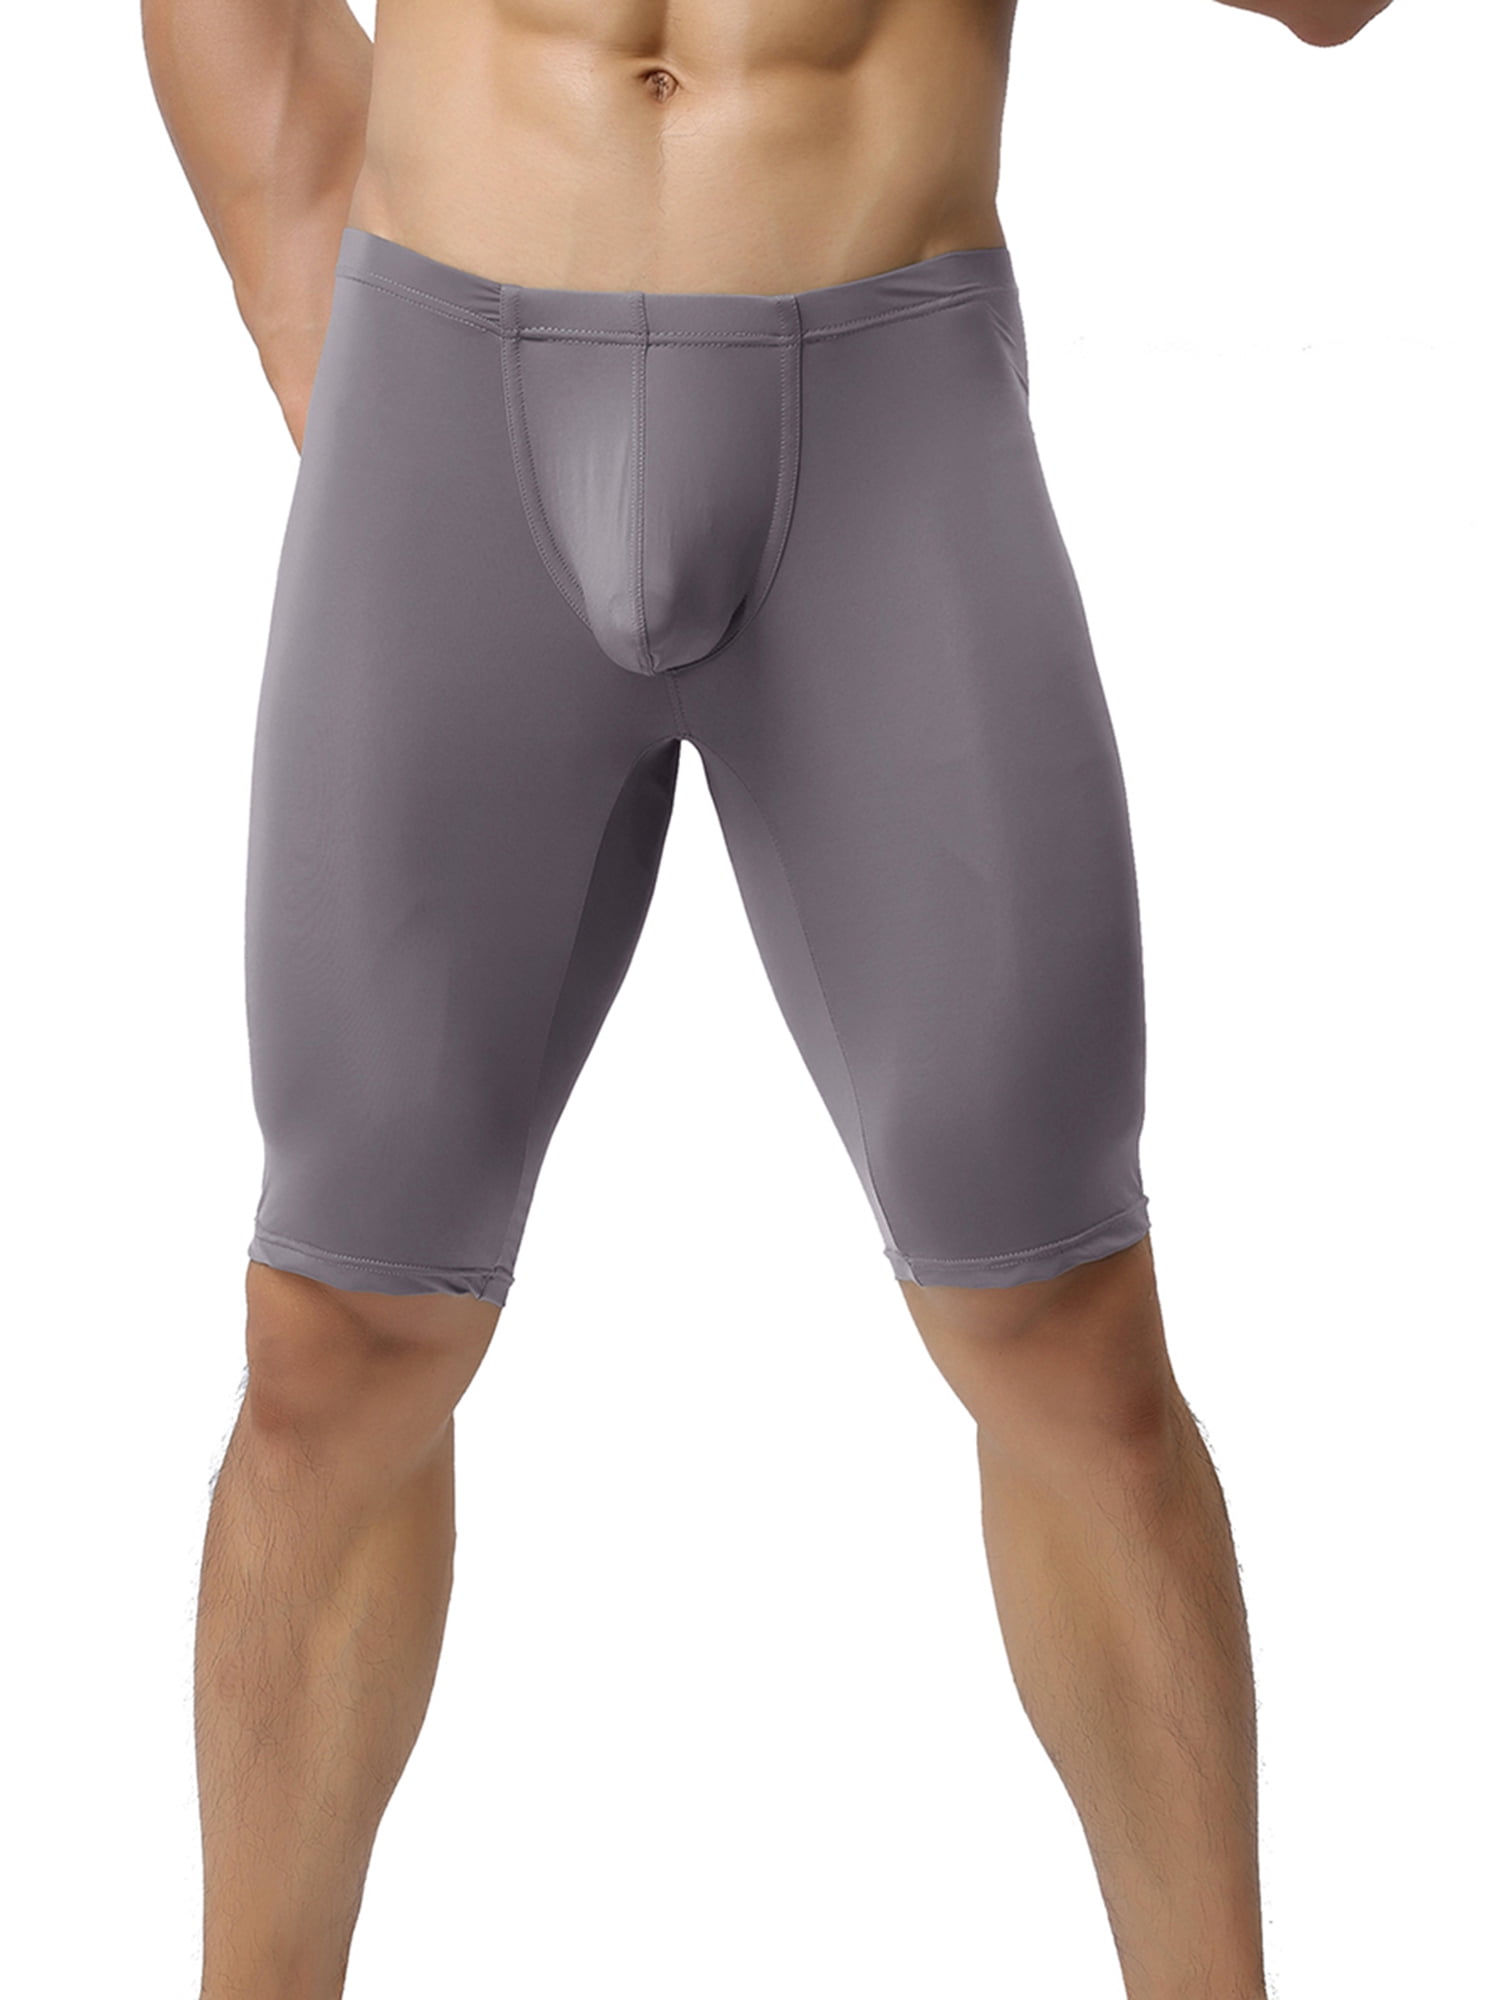 Men Boxer Briefs Solid Color Ball Pouch Bulge Enhancing Underwear